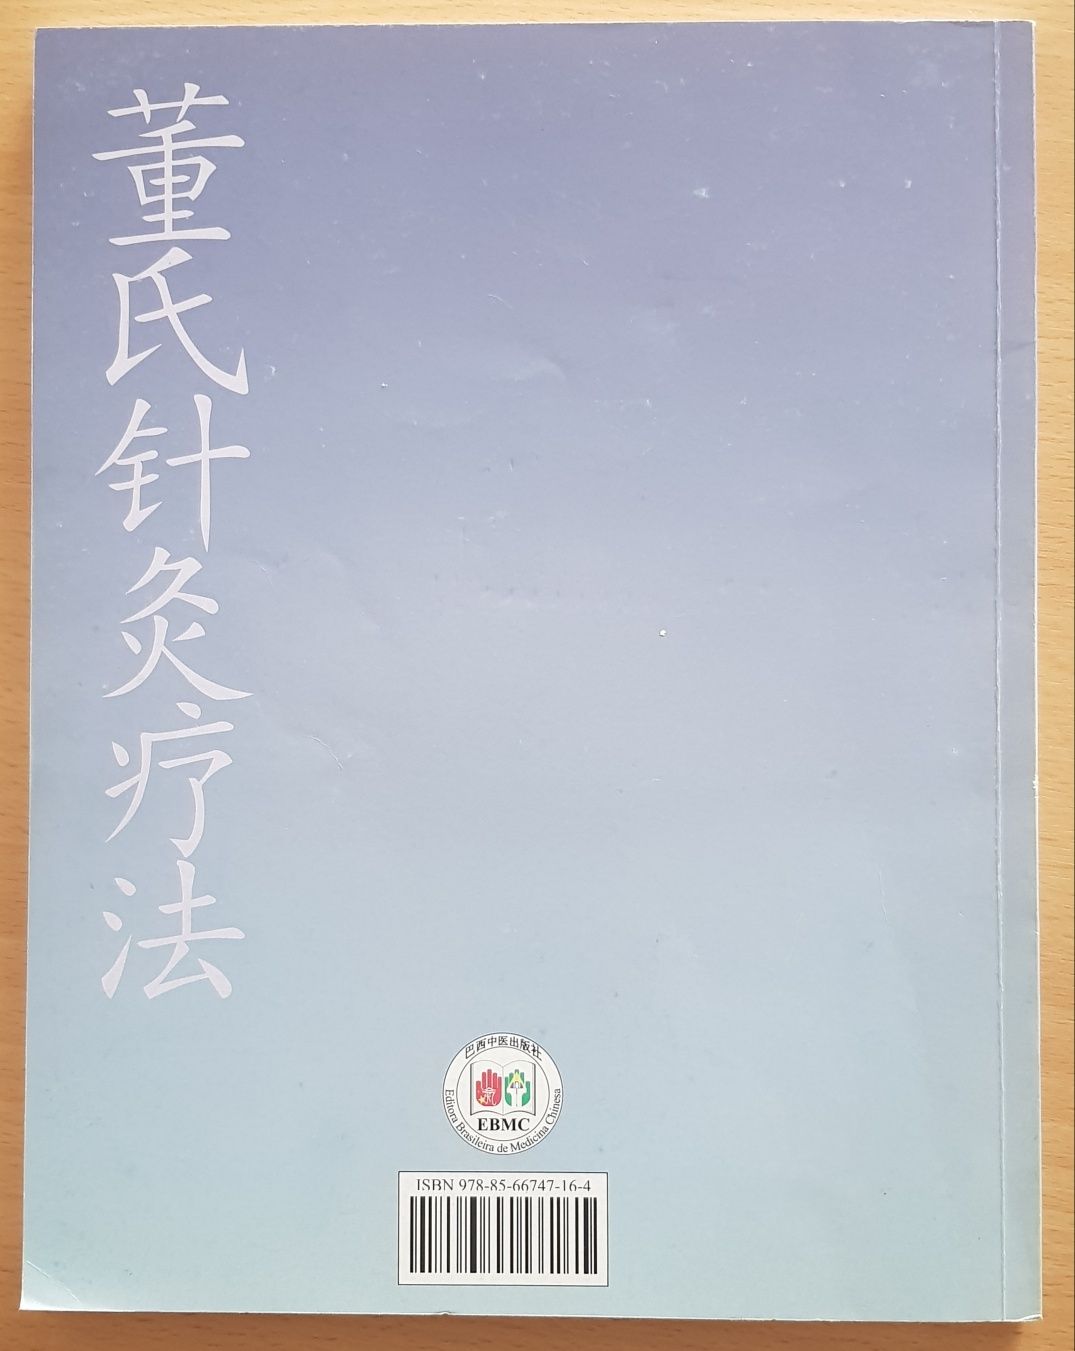 Vendo Livro Introdução à Acupuntura do Mestre Tung
1 livro em língua